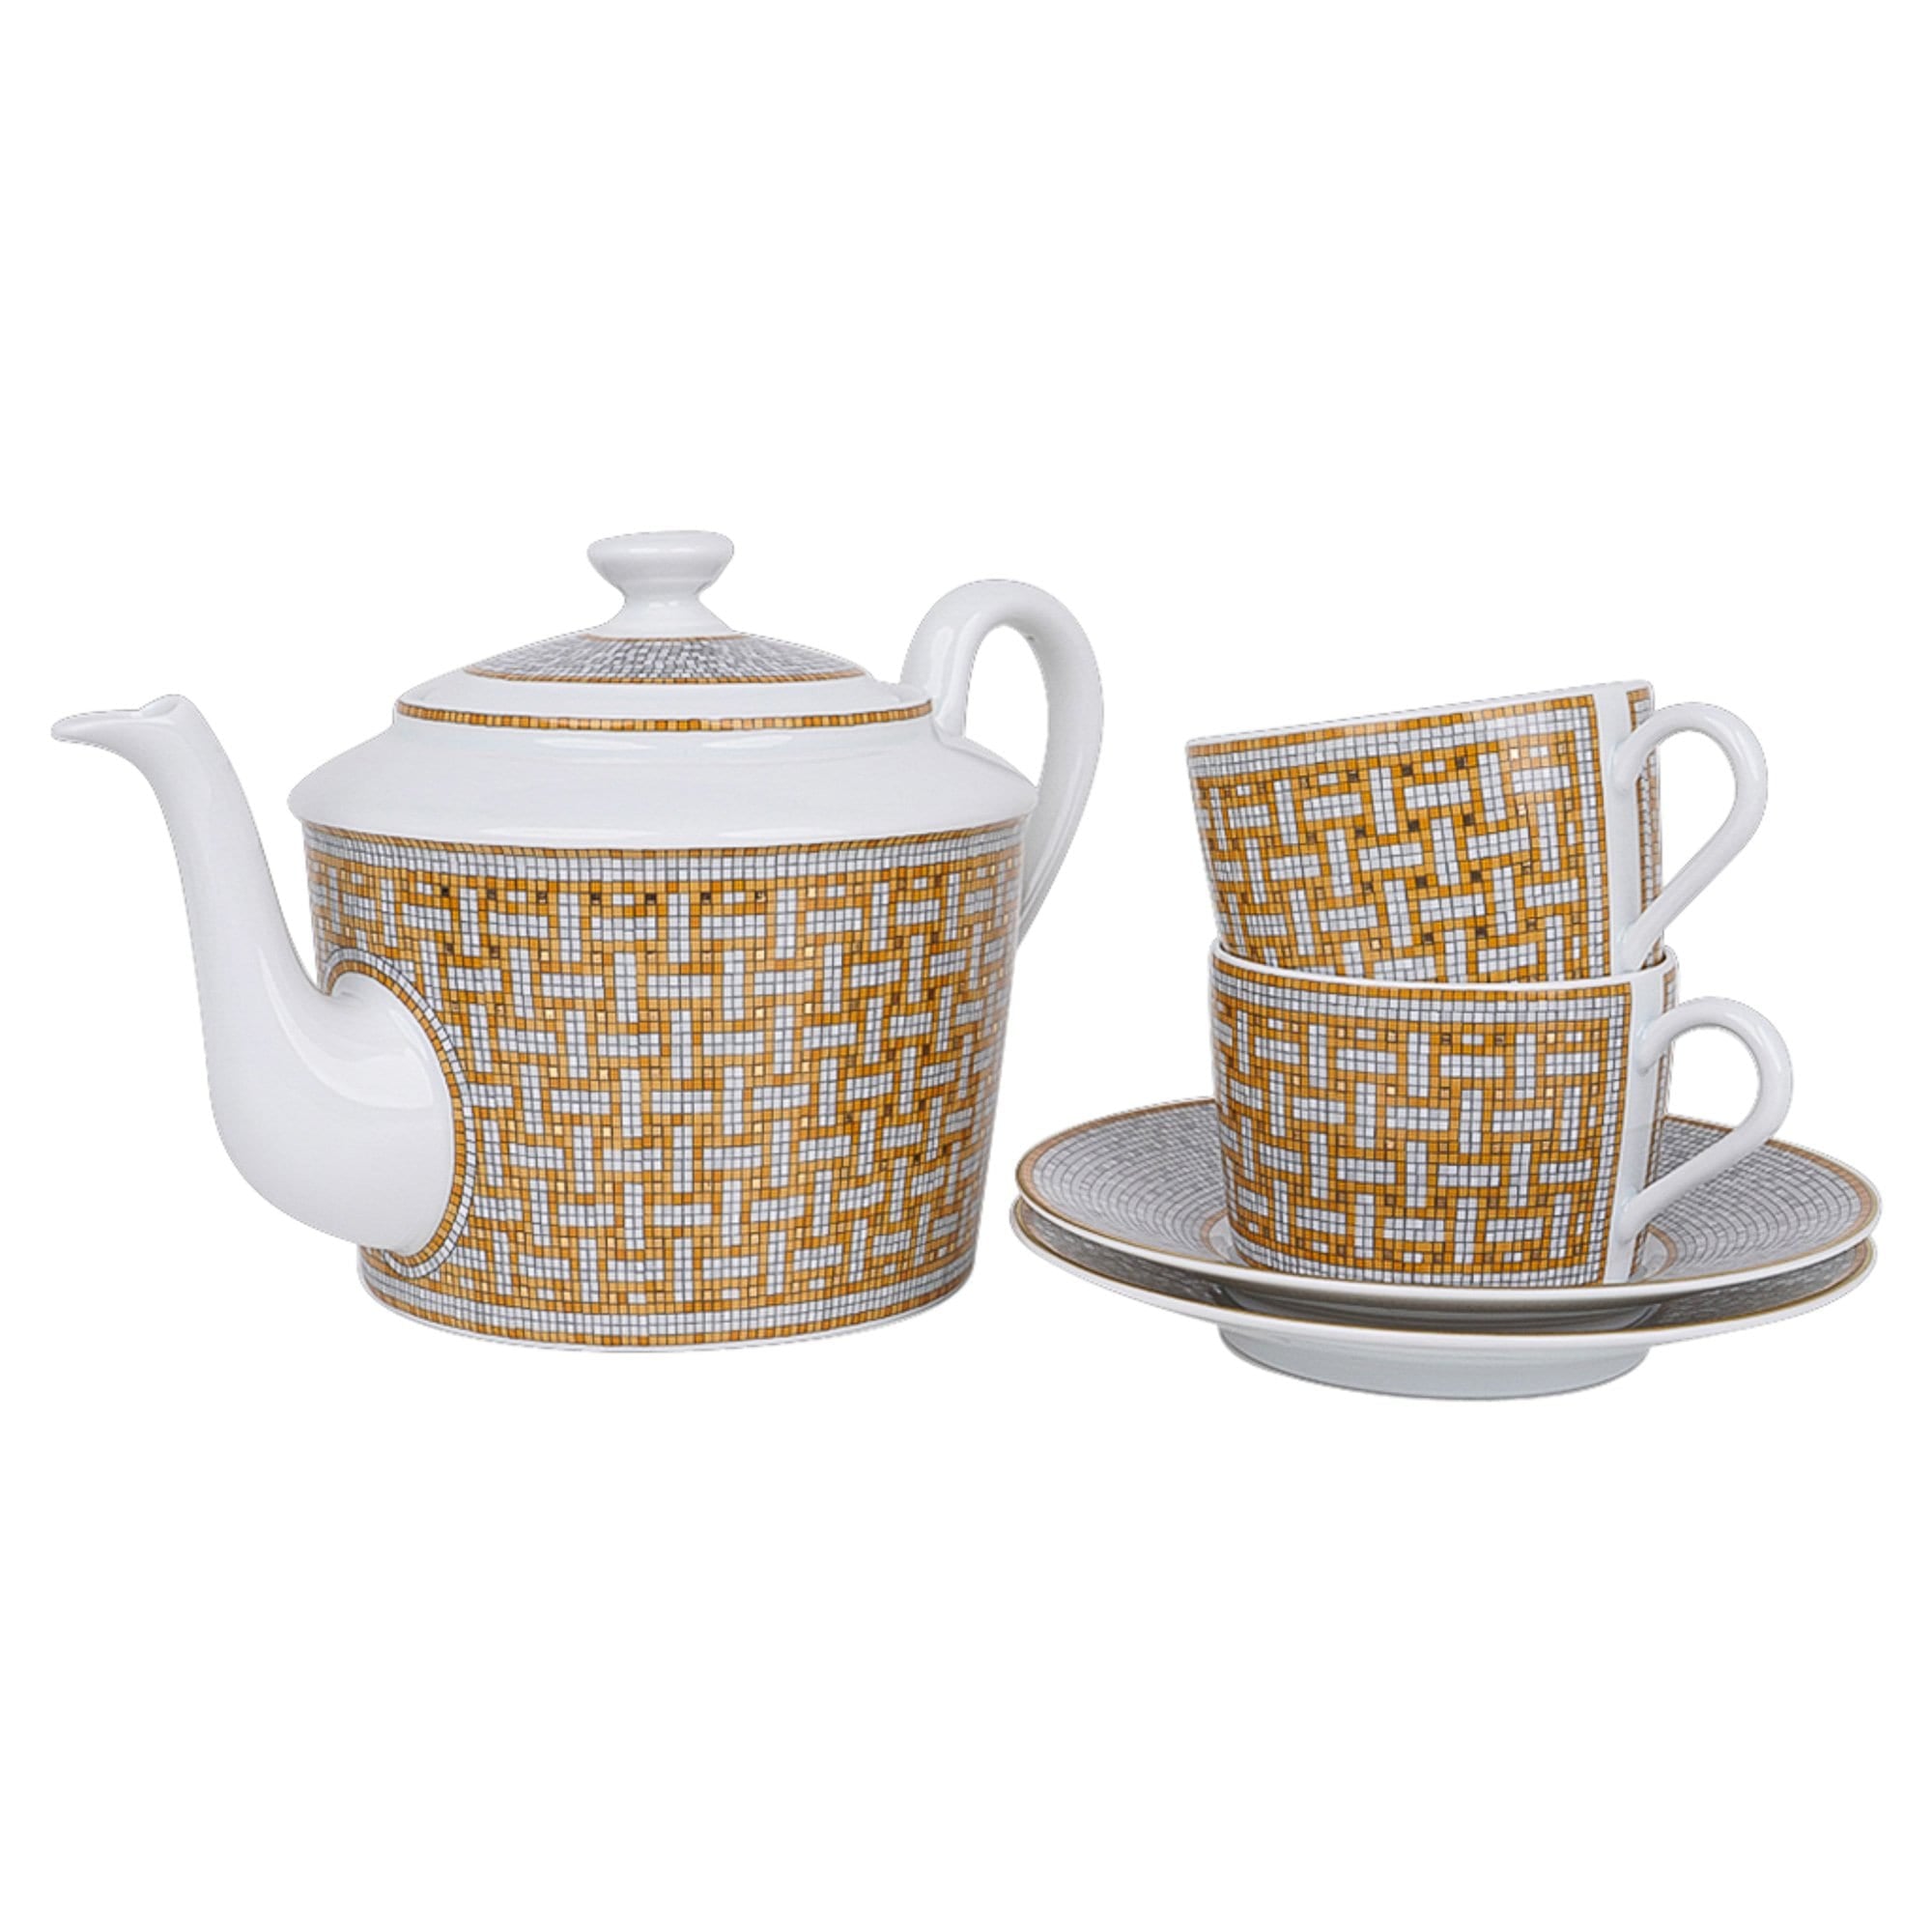 Sold at Auction: Hermes Paris Mosaic Tea Set (15 Pieces)